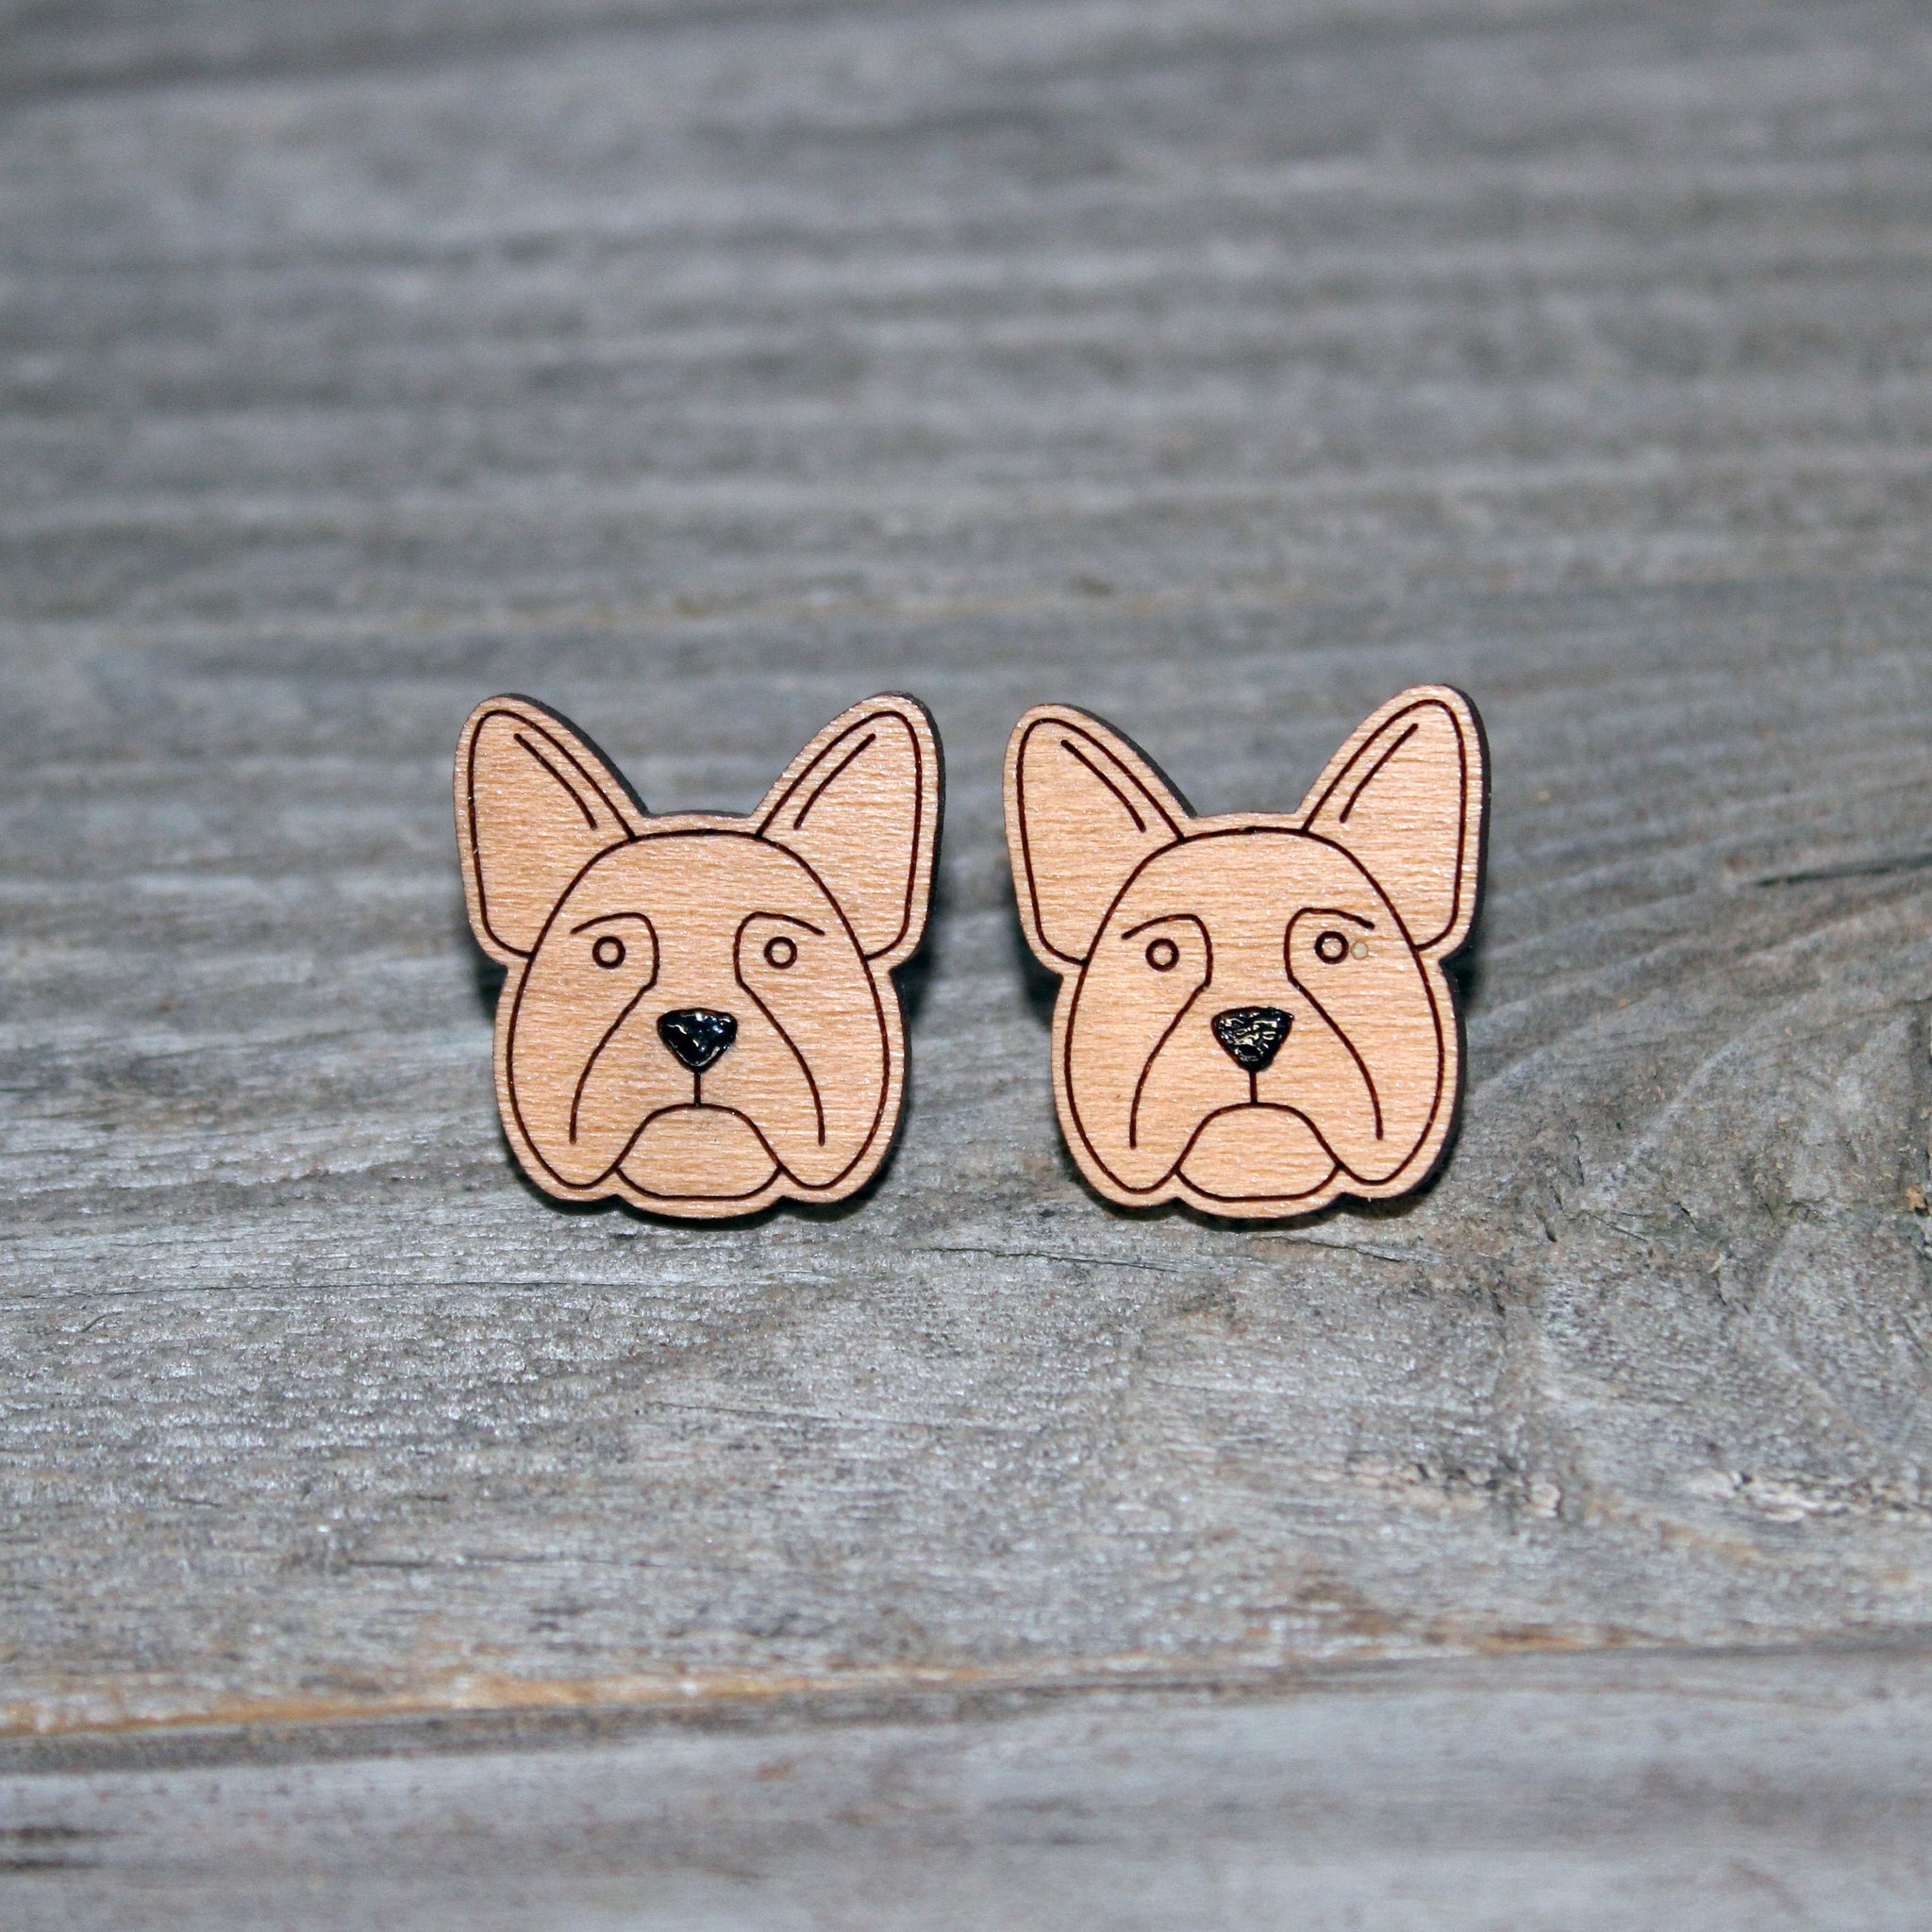 Frenchie Face Stud Earrings/Cute French Bulldog Stud Earrings/French Bulldog Studs/Dog Face Wooden Earrings/Stud Earrings